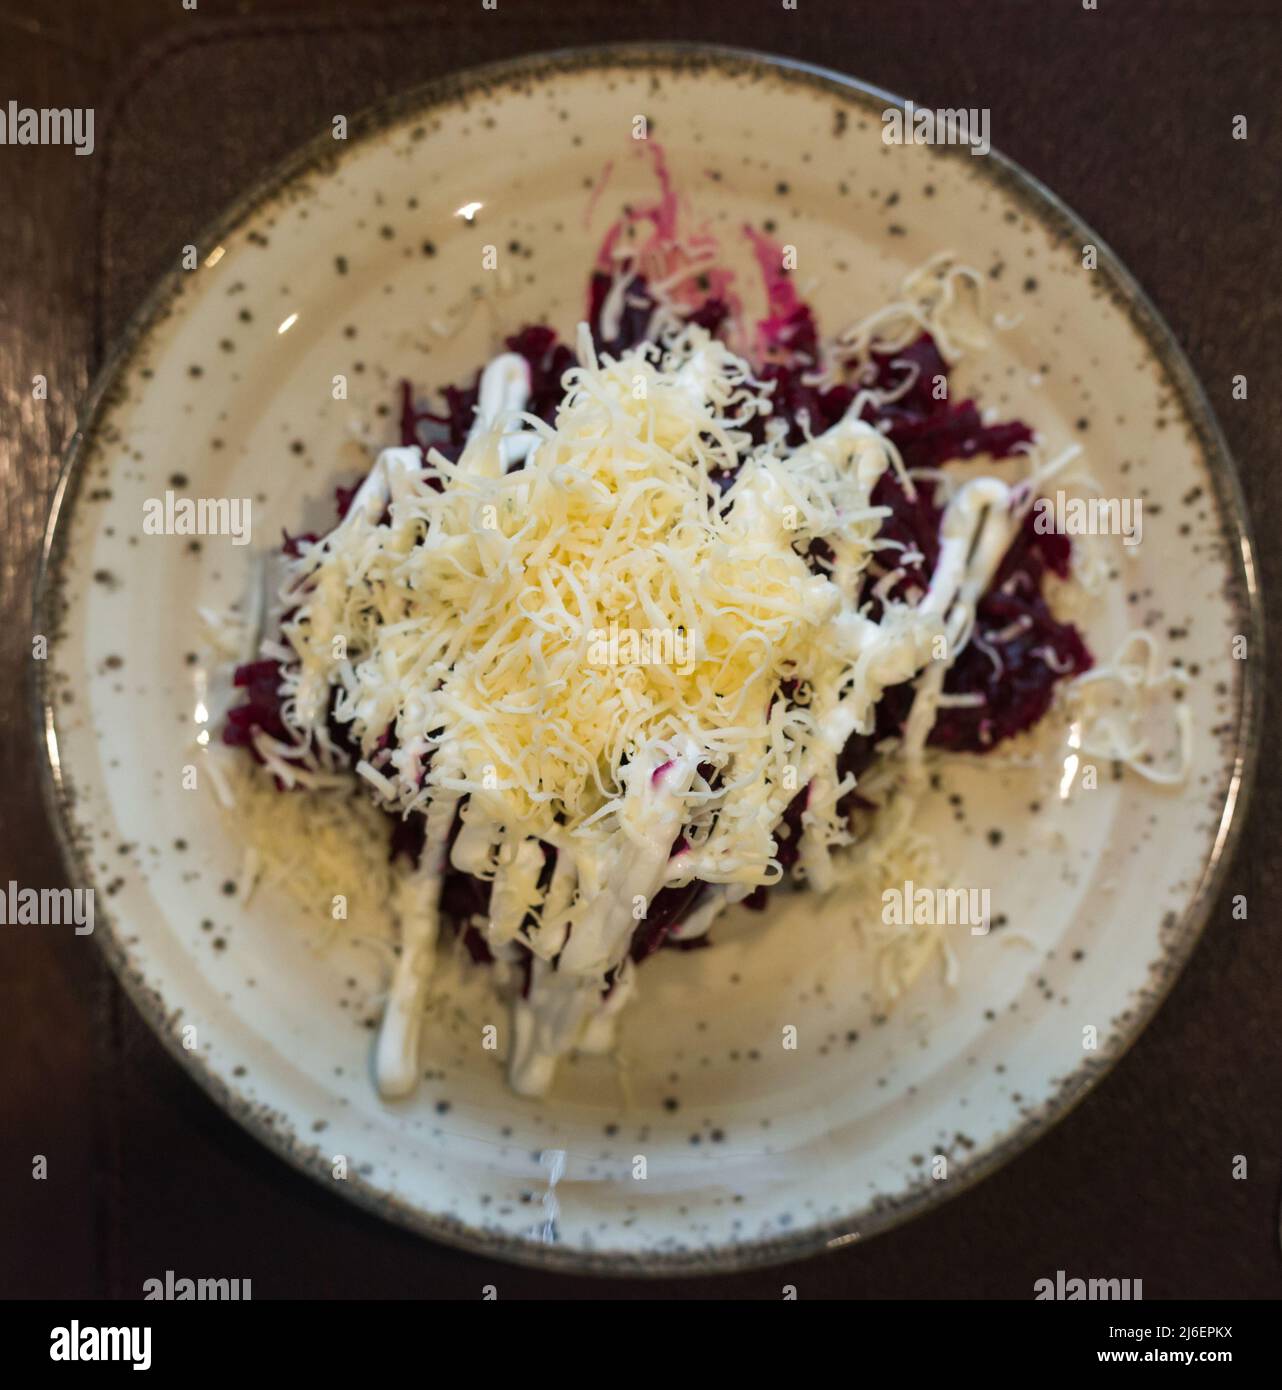 un mix di barbabietole, formaggio, maionese su un piatto del ristorante. vista dall'alto Foto Stock